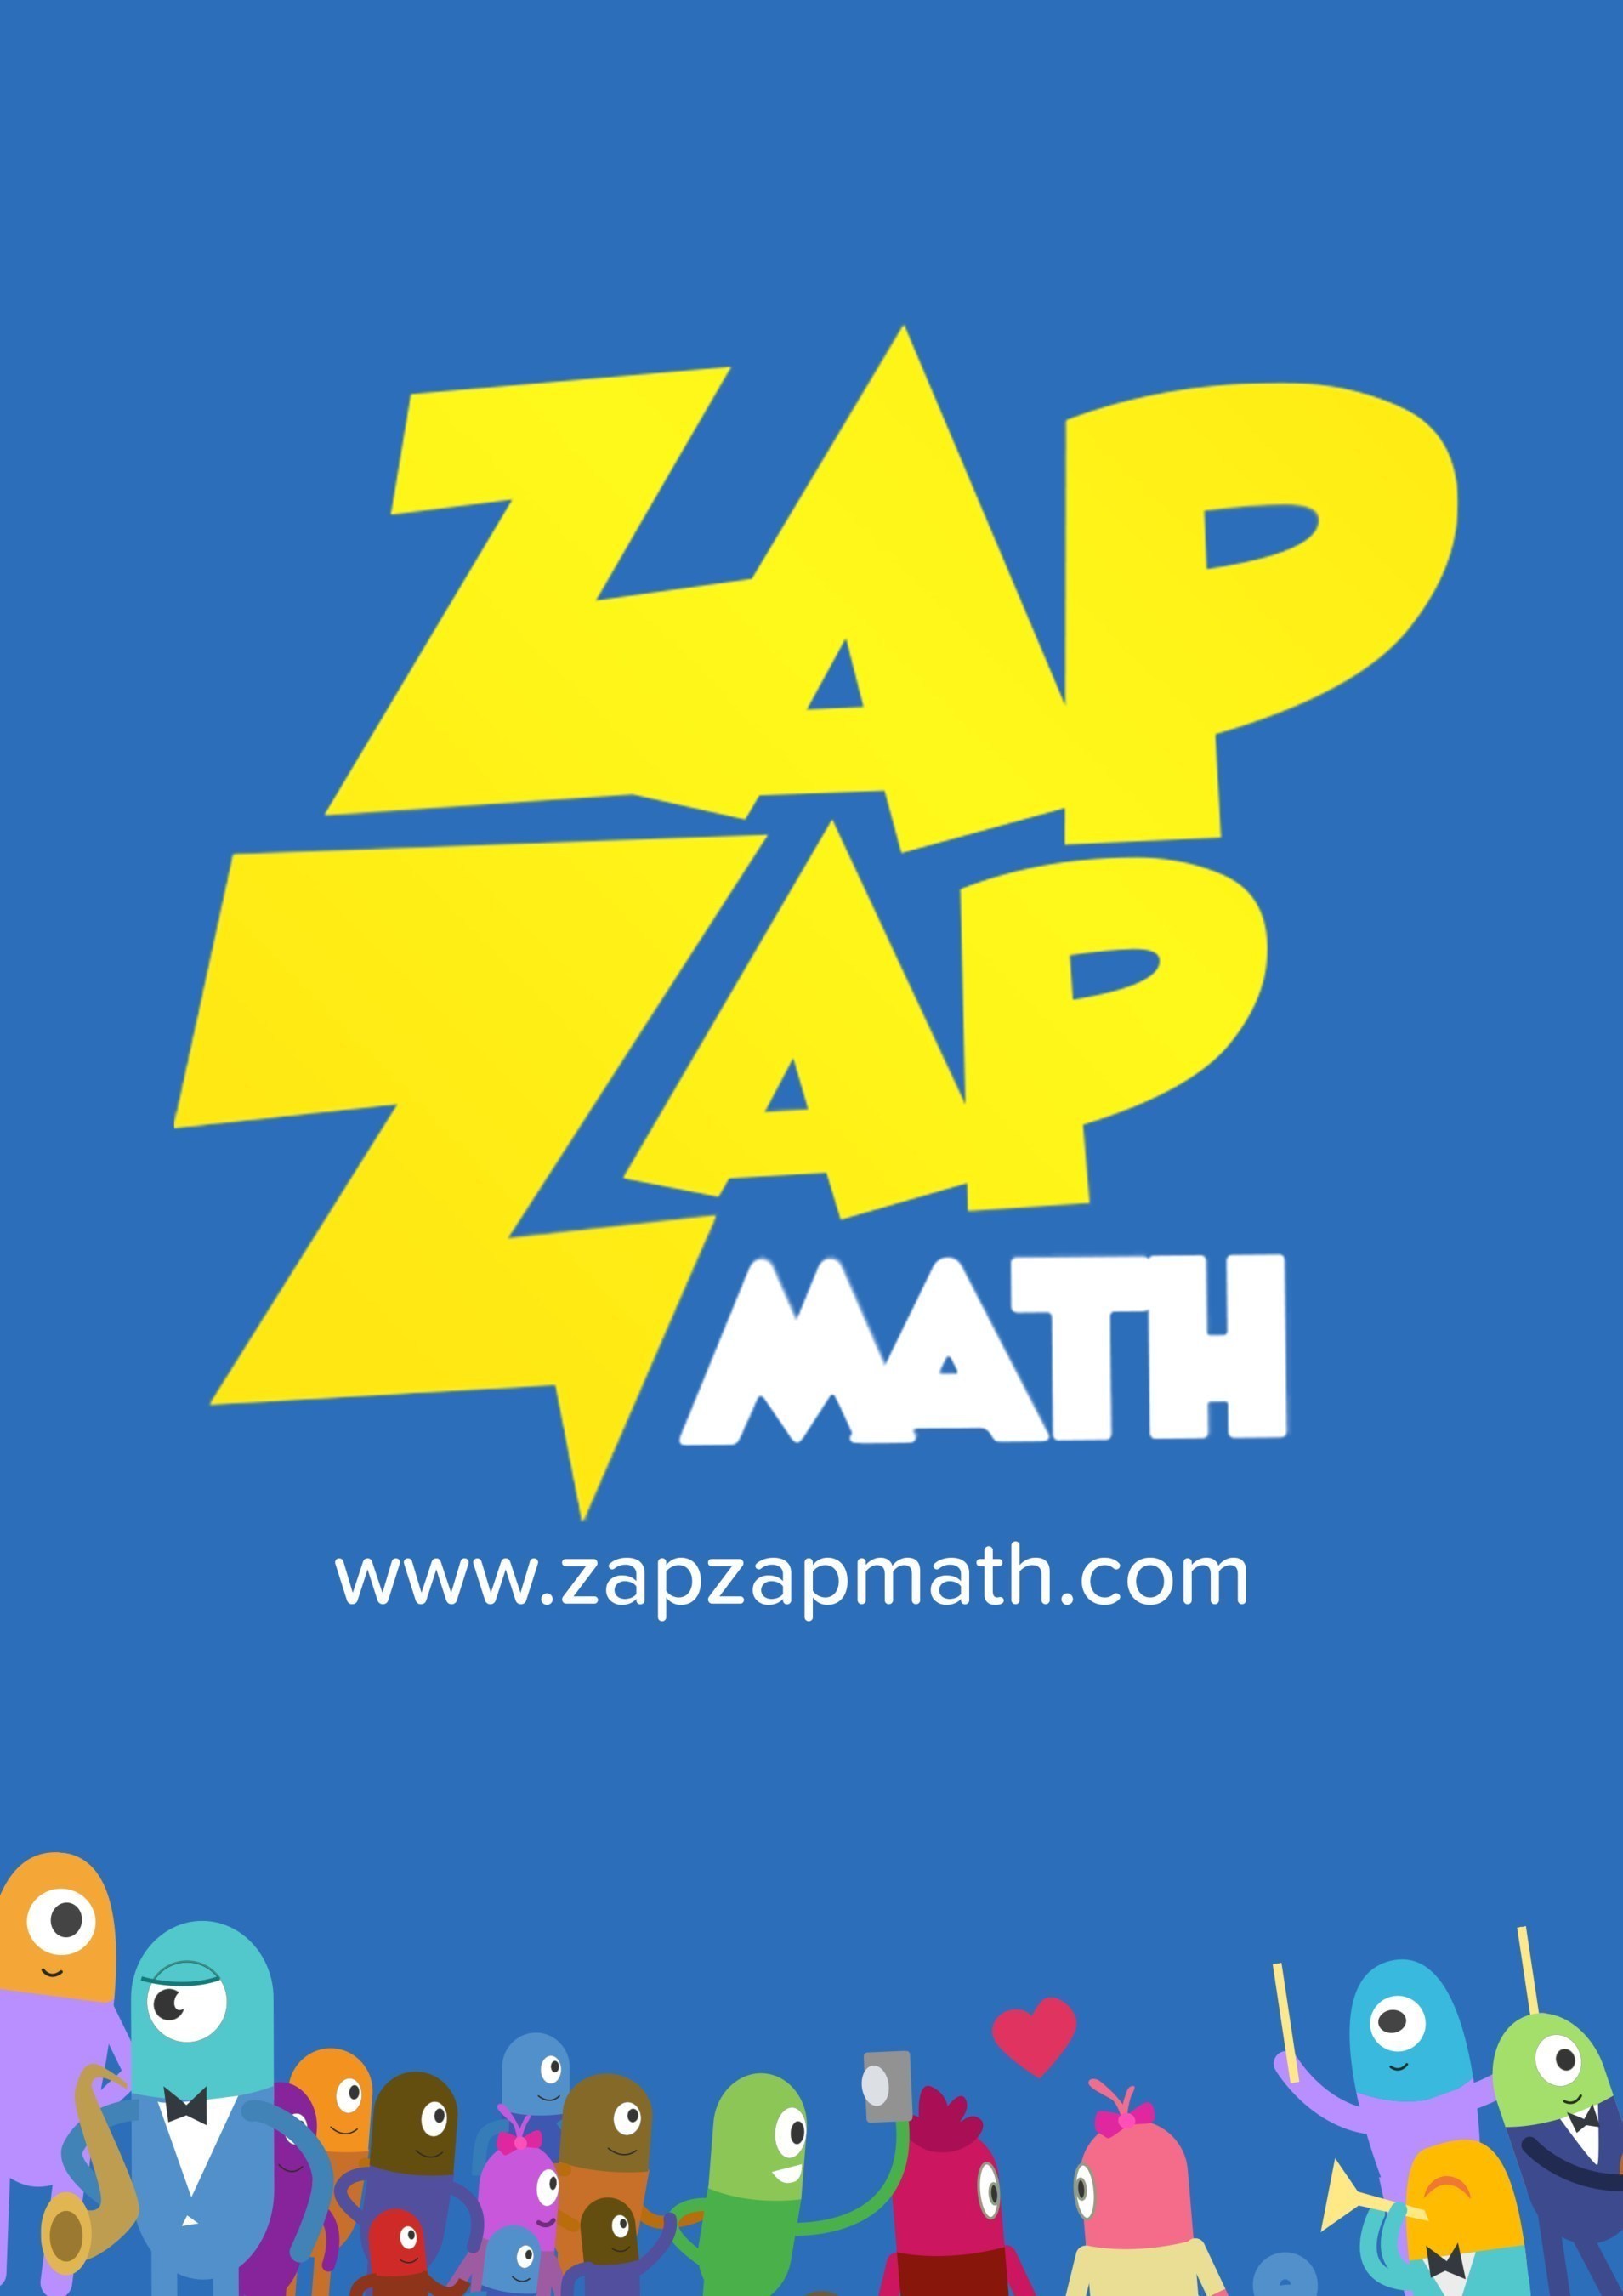 Zap Zap Math Universe